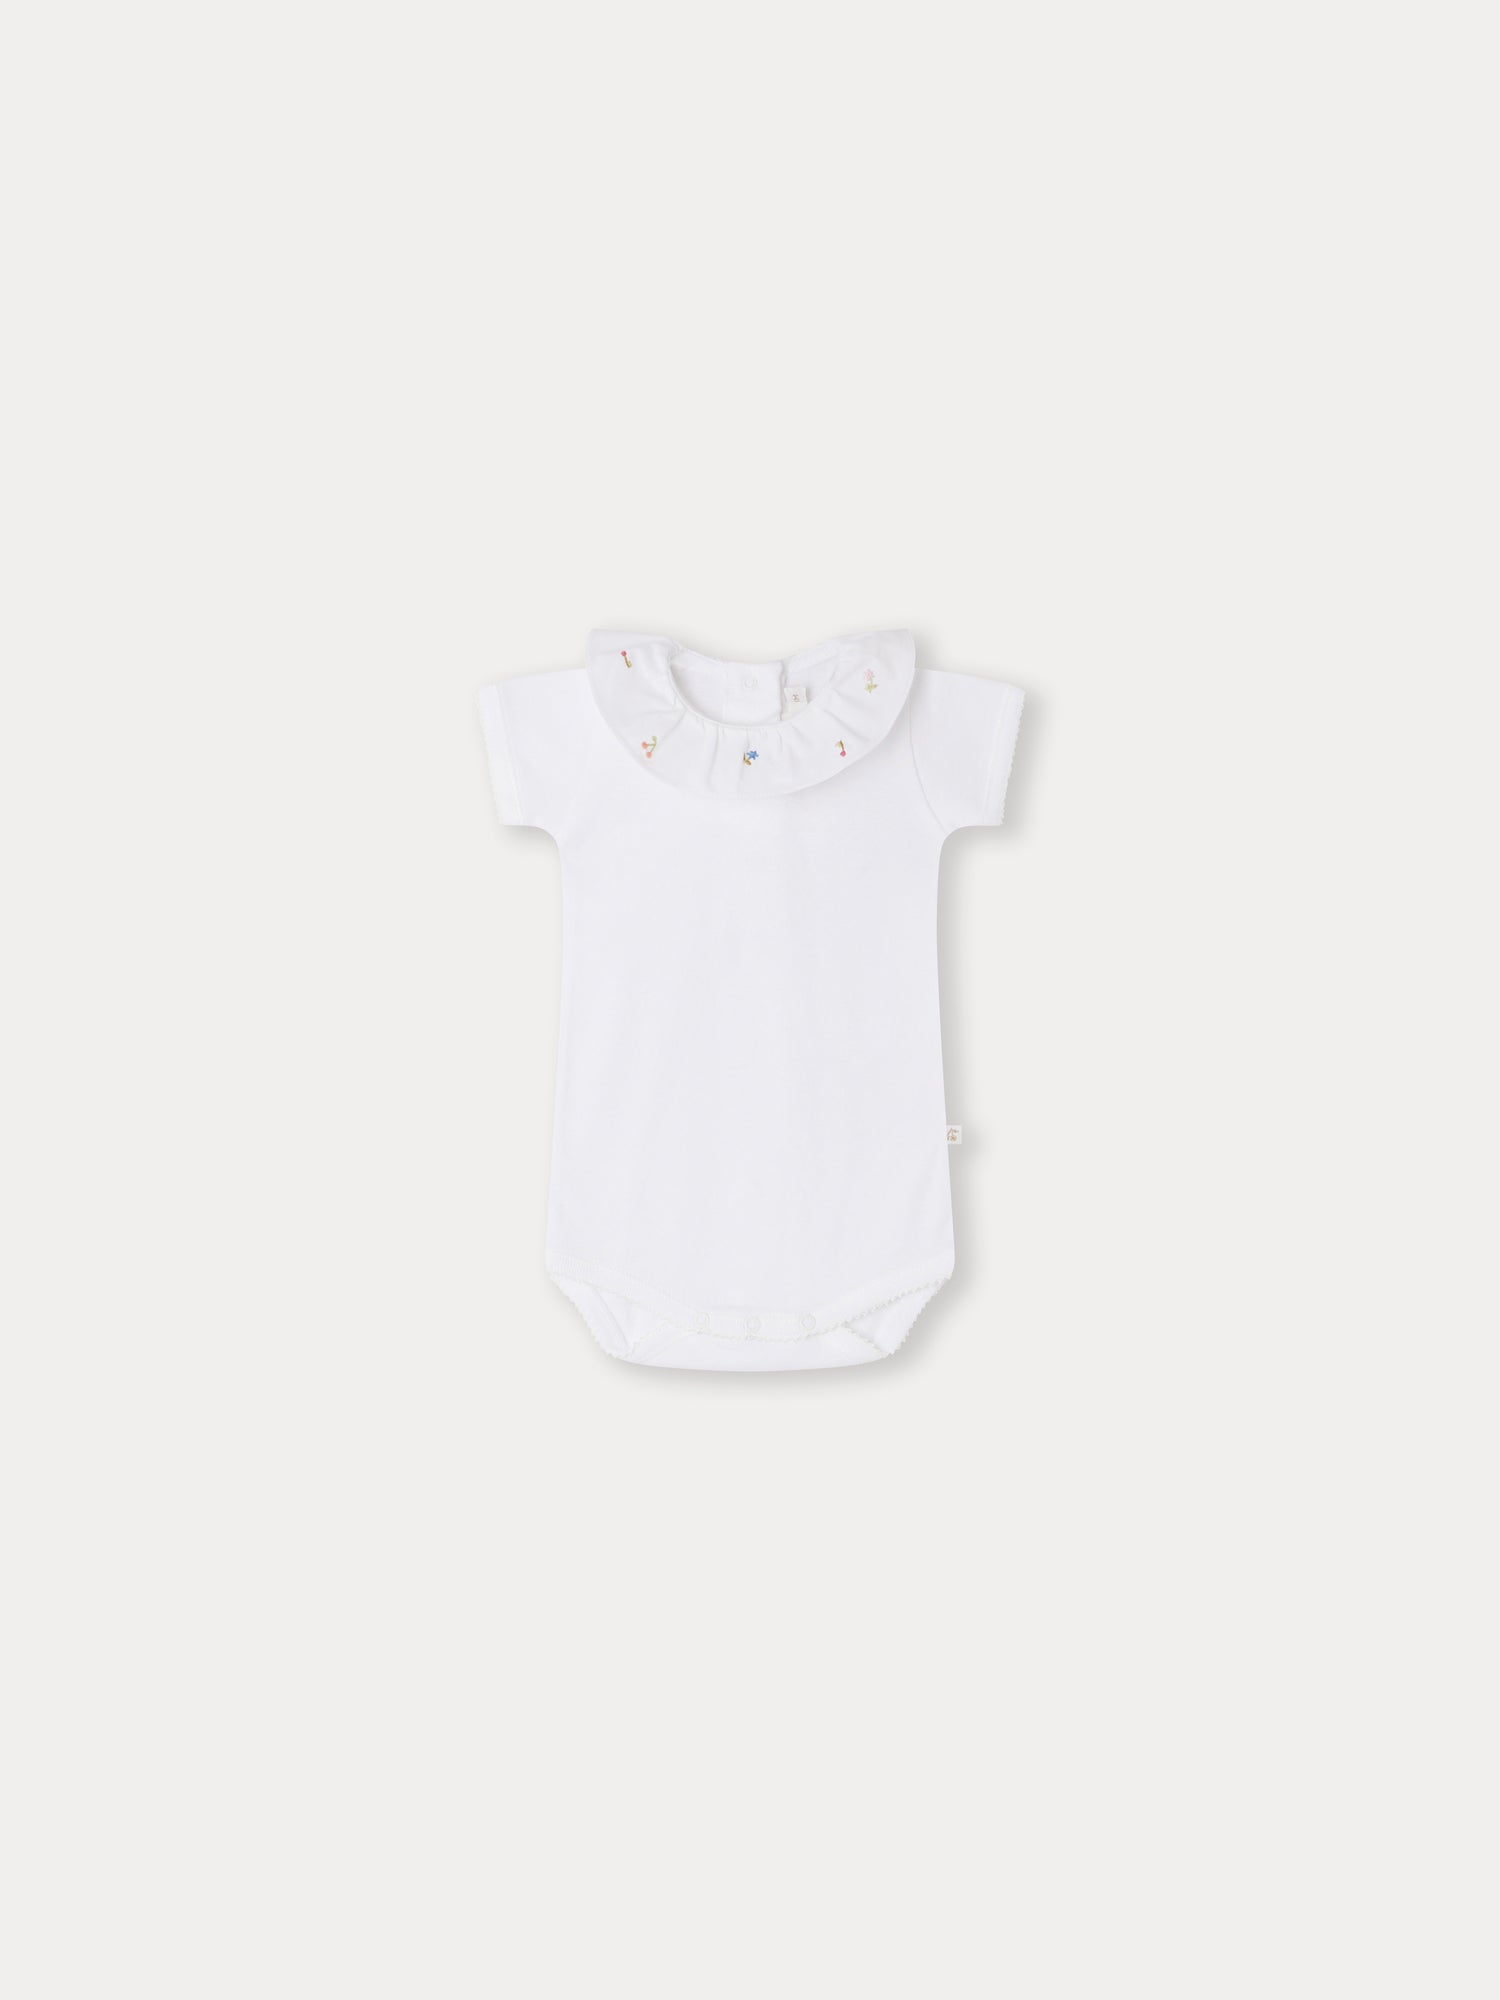 Baby Girls White Ruffled Cotton Babysuit